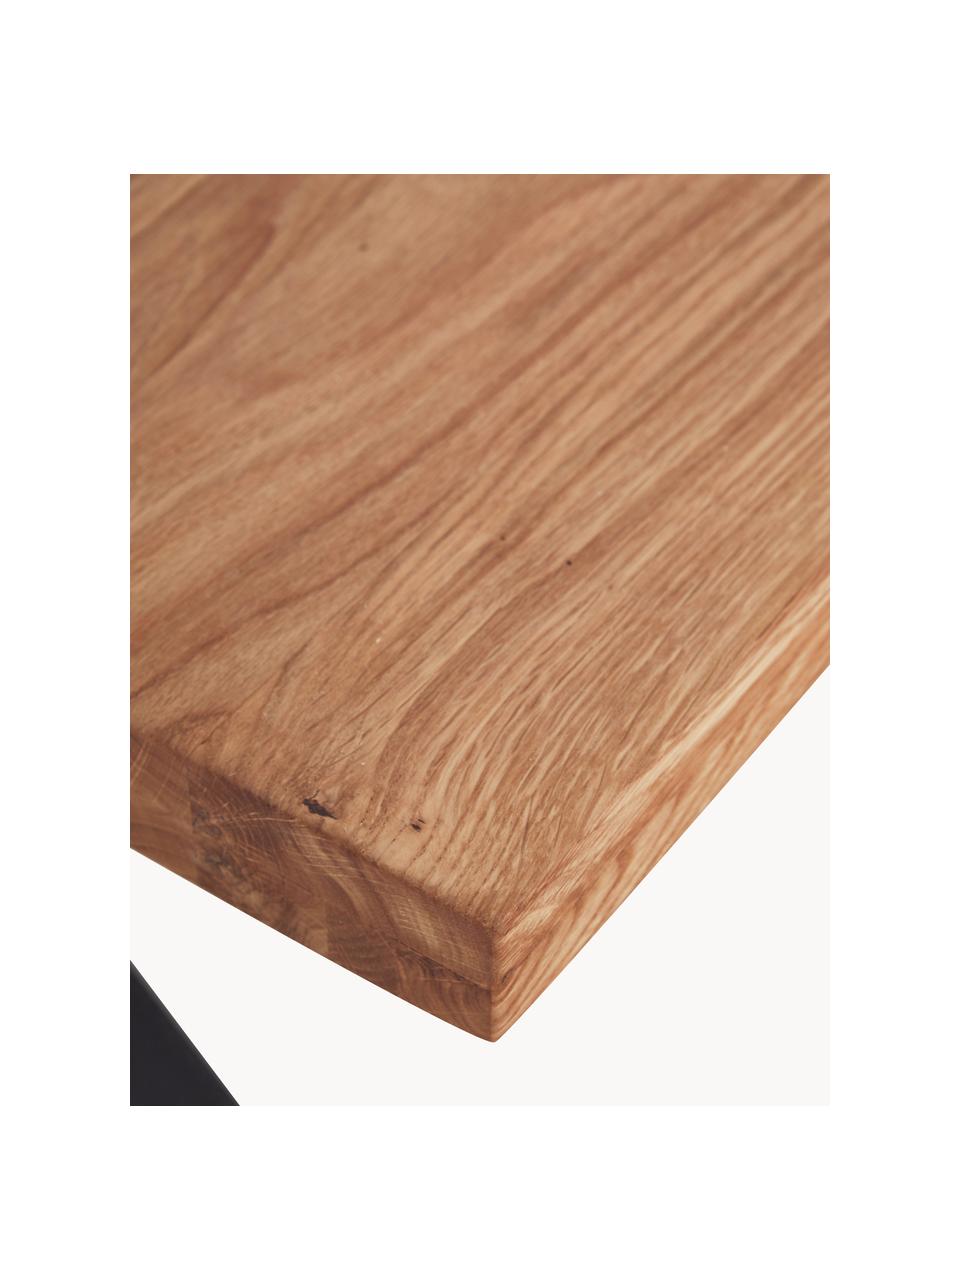 Mesa de comedor Oliver, tablero de madera maciza